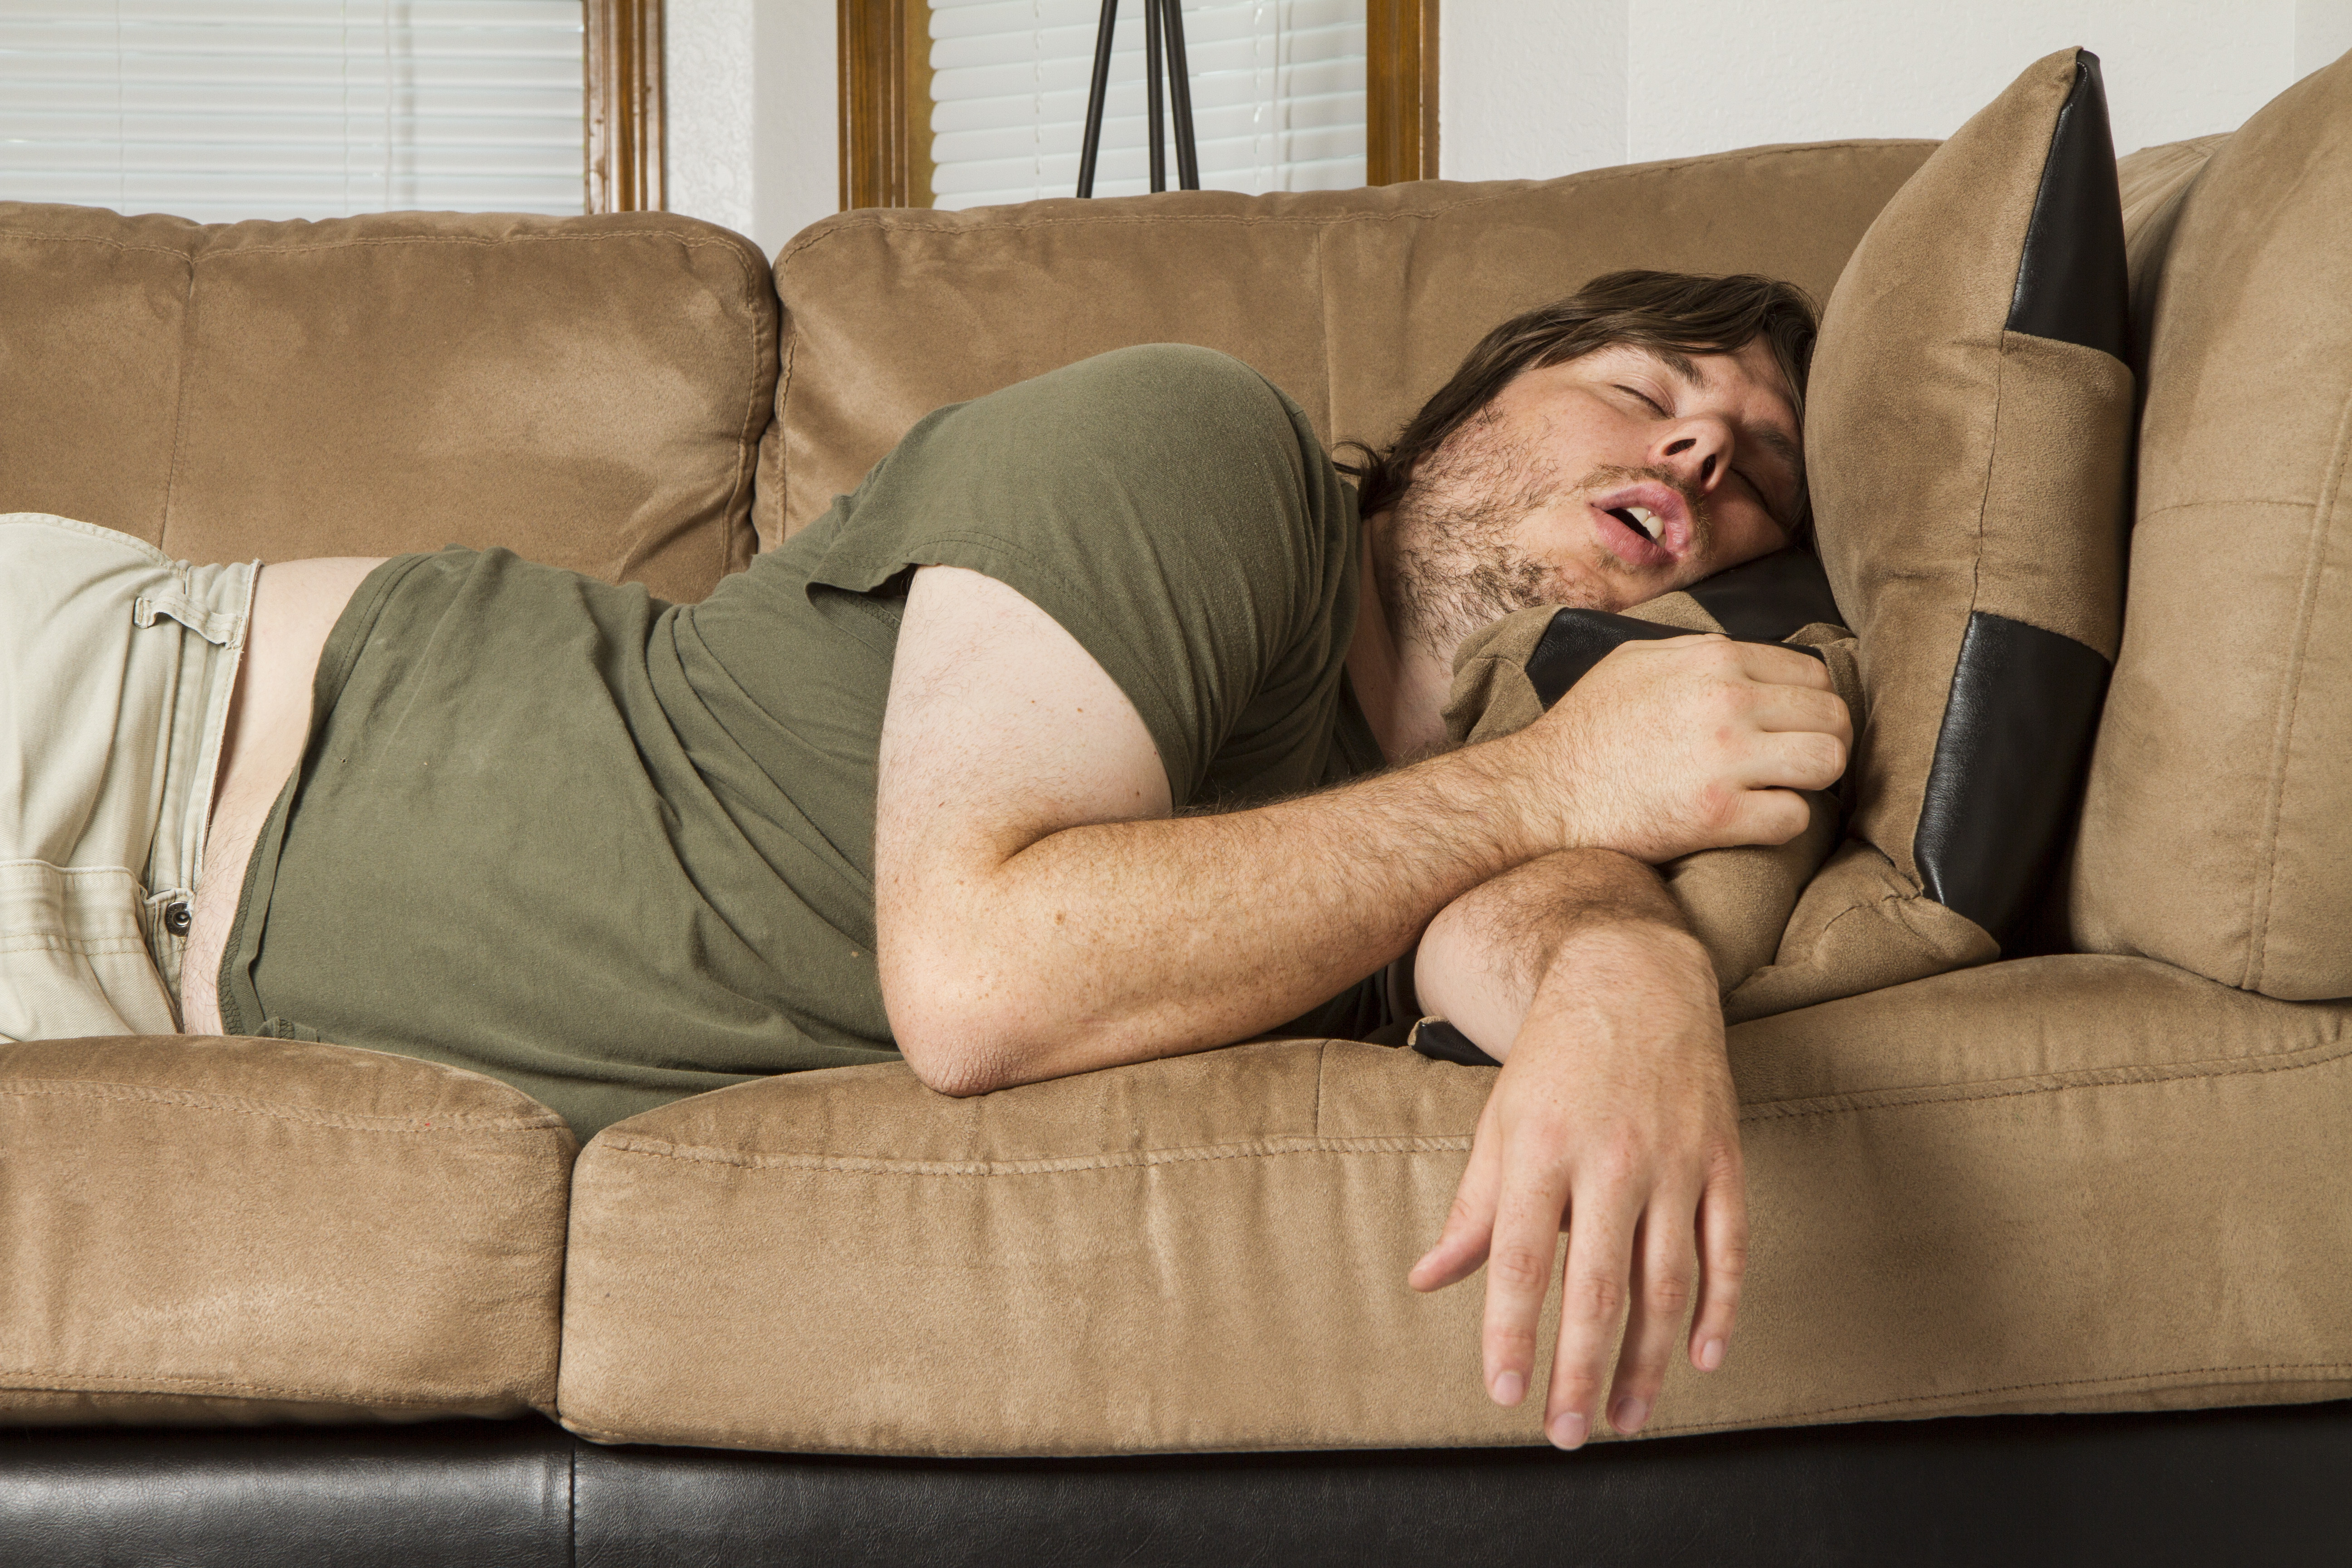 A sleeping man | Source: Shutterstock